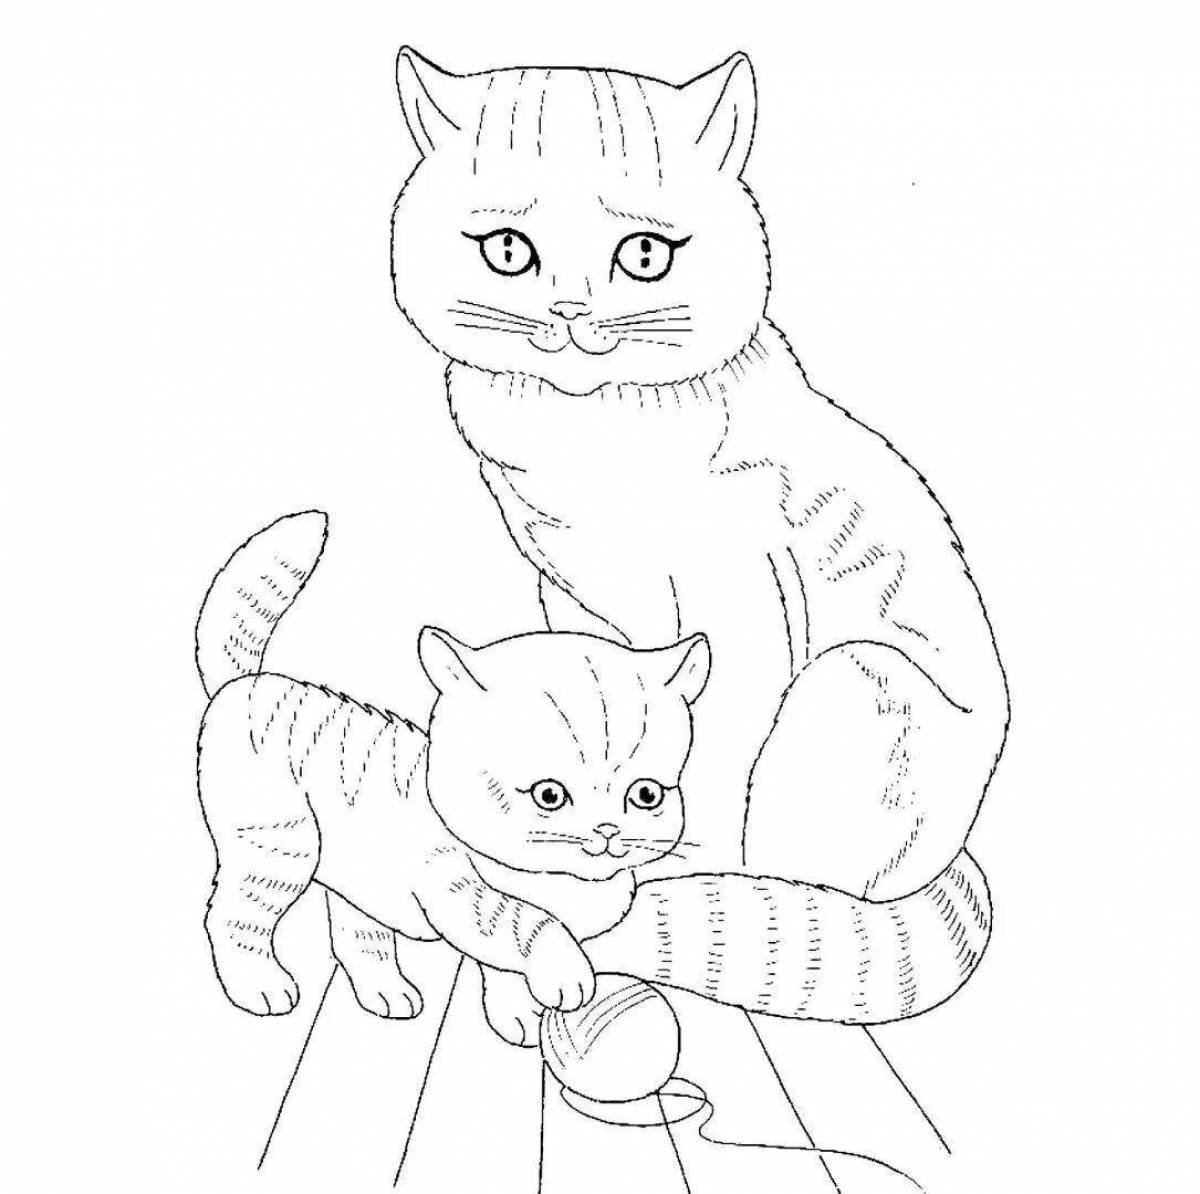 Глупый рисунок котенка для детей